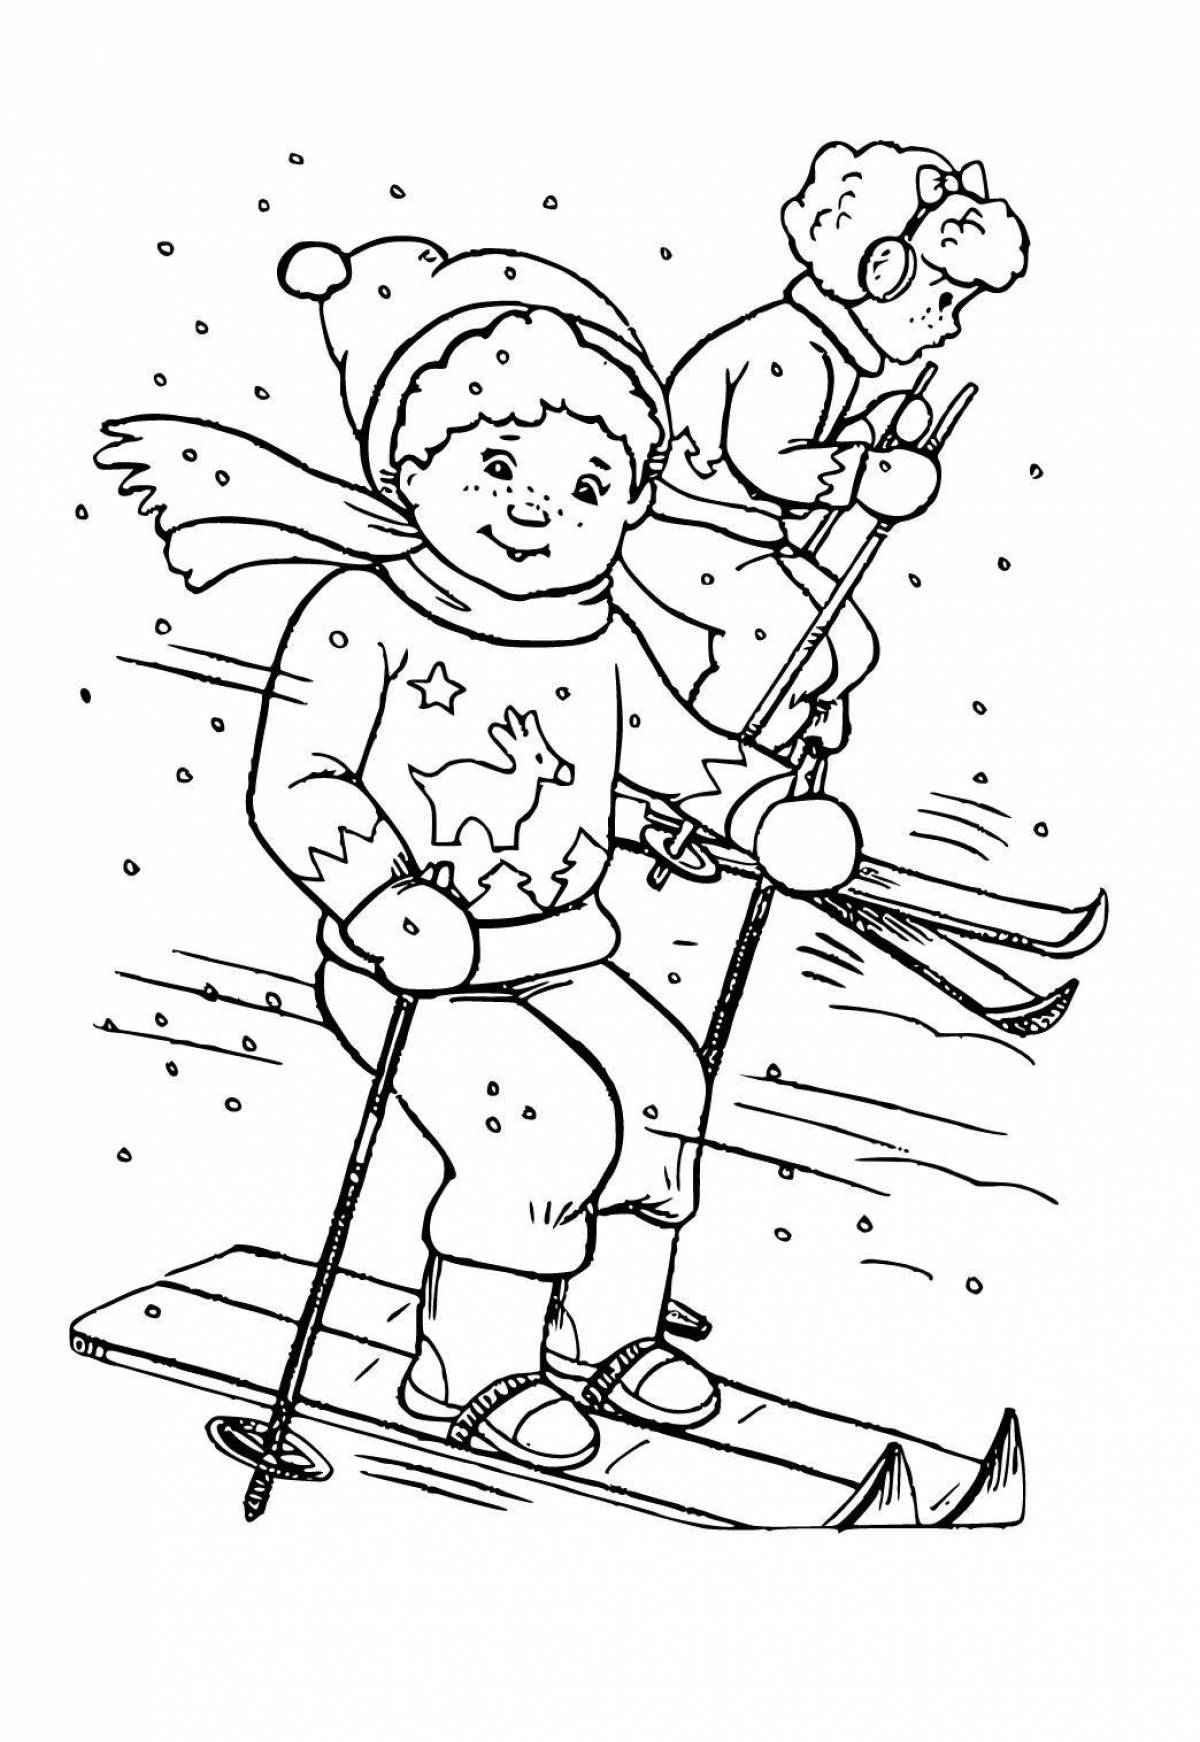 Забавная раскраска лыжника для детей